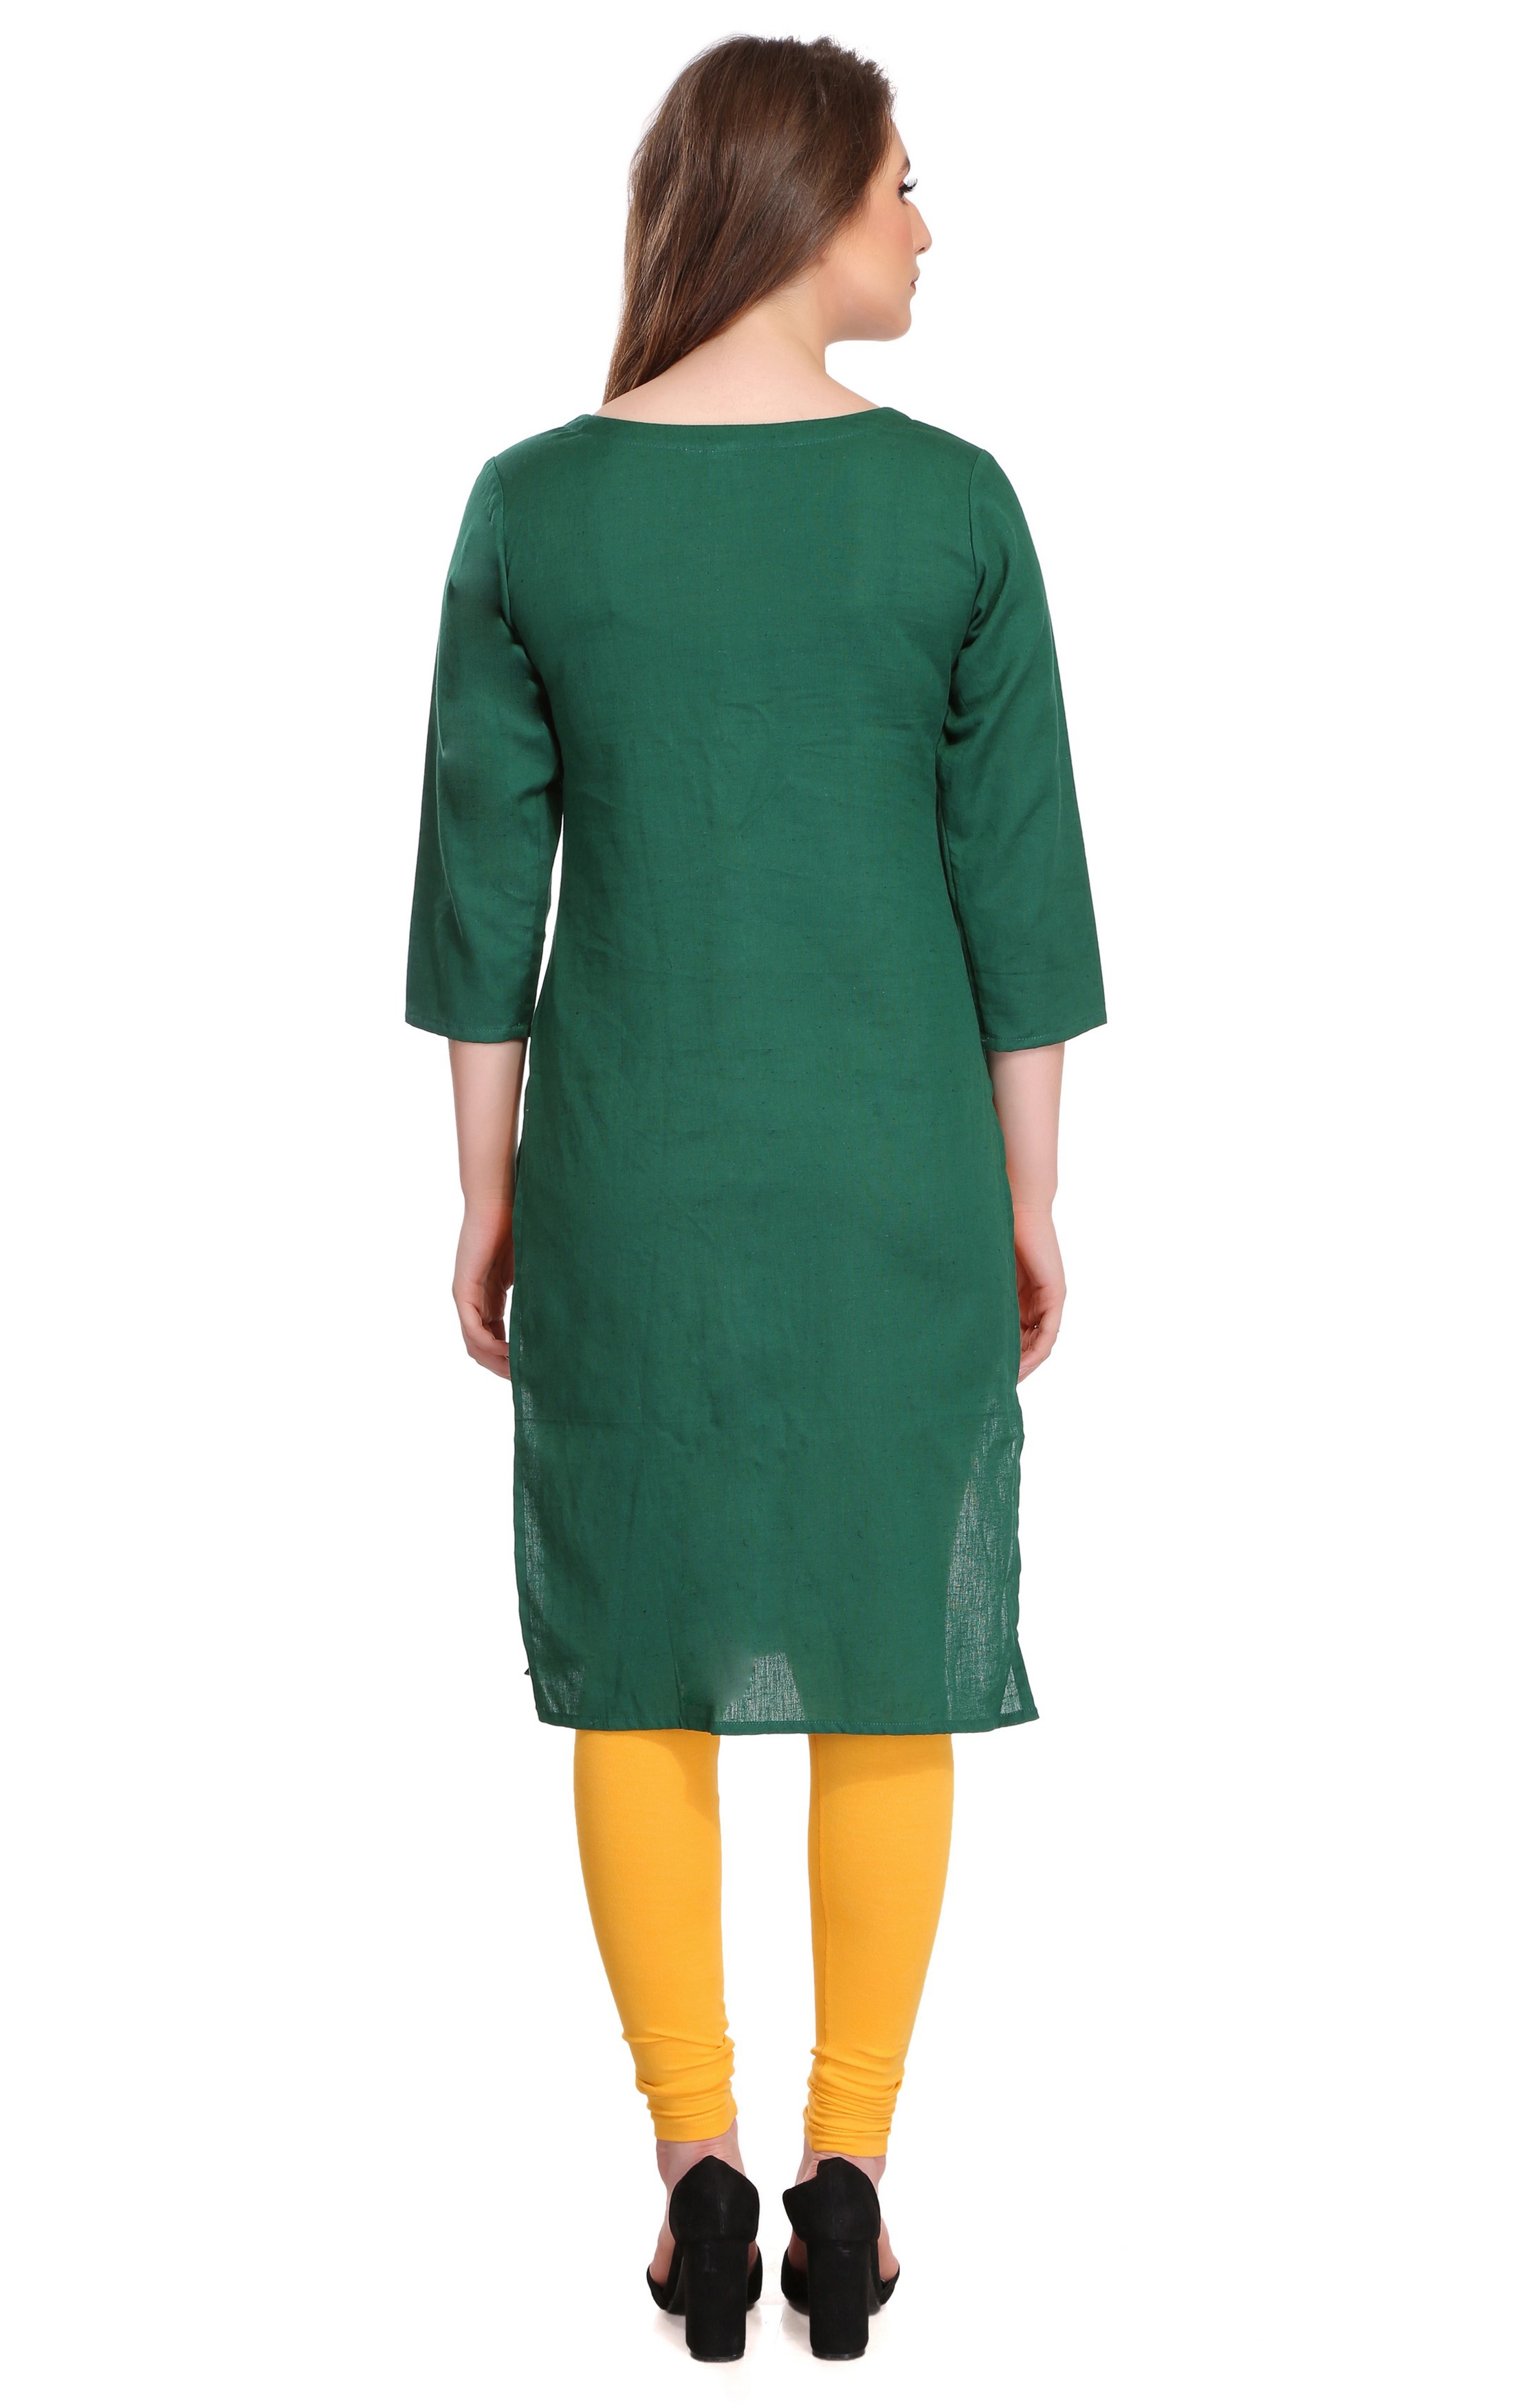 Colorfit | Colorfit Cotton Lycra Churidar Length Leggings for Women 3